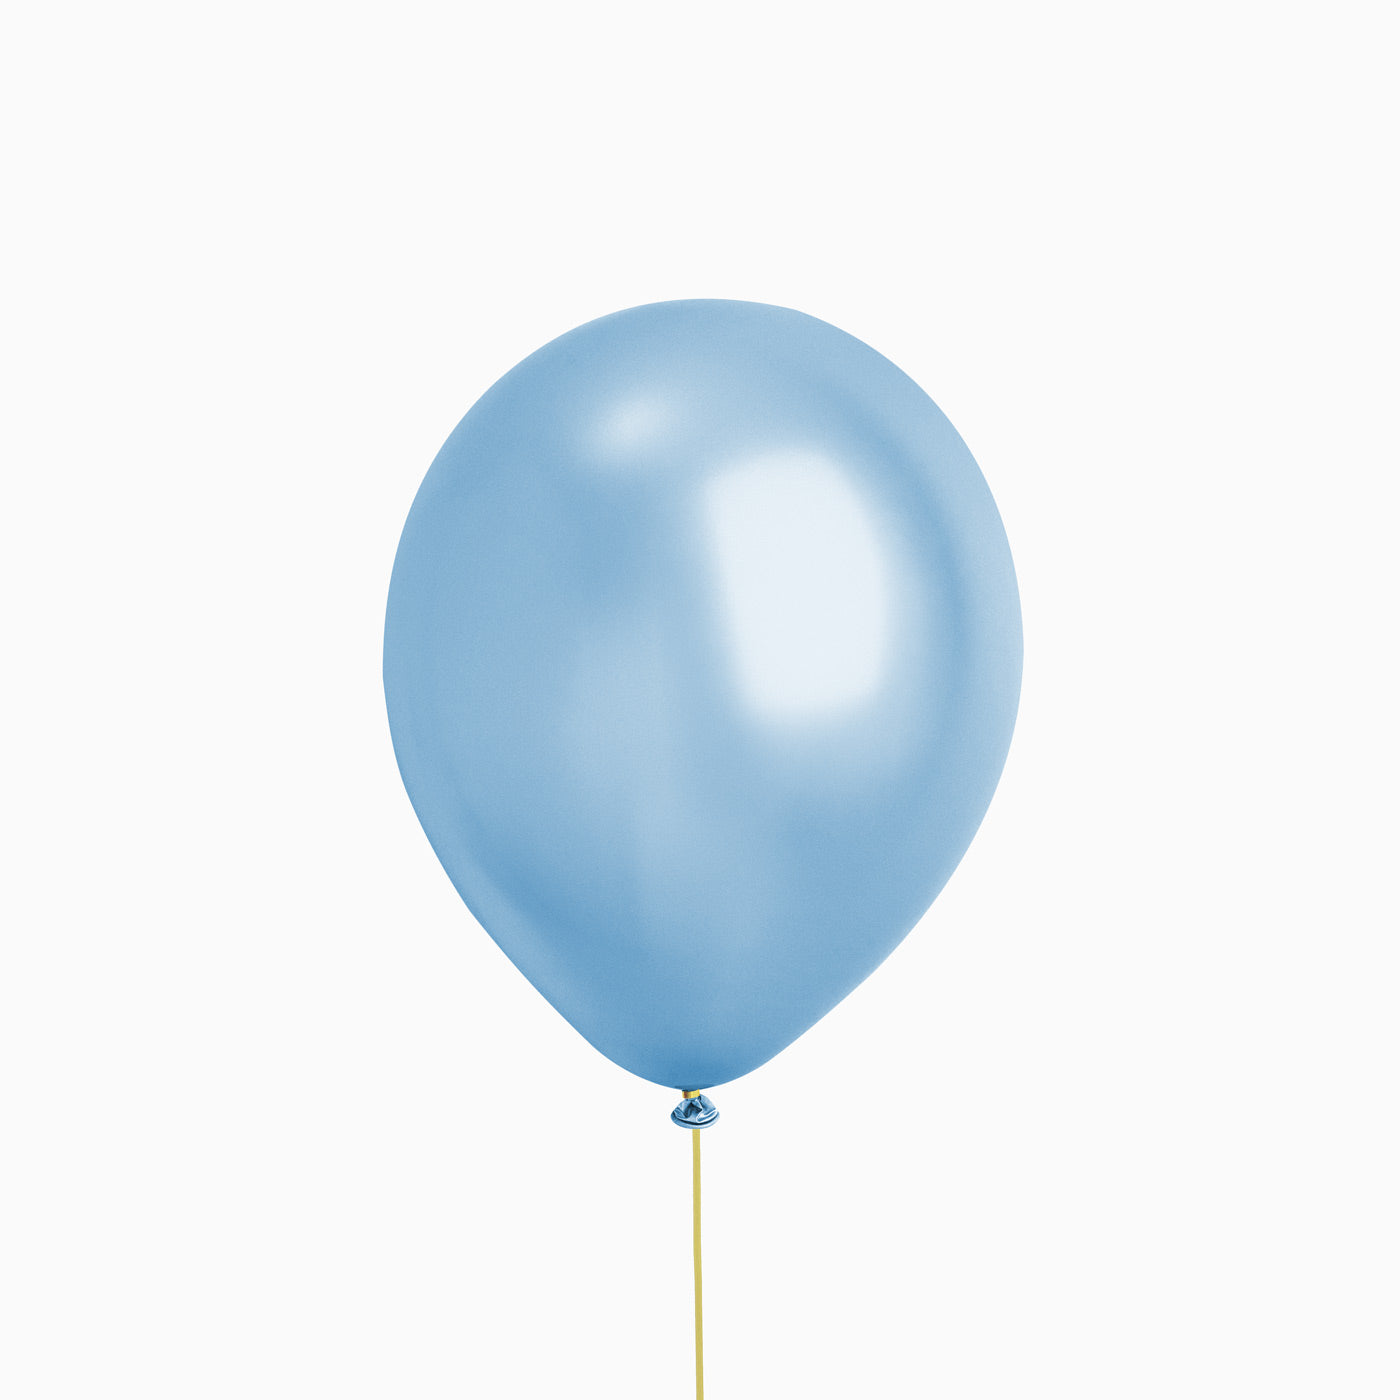 Ballon LTEX bleu métallisé / pack 10 UDS